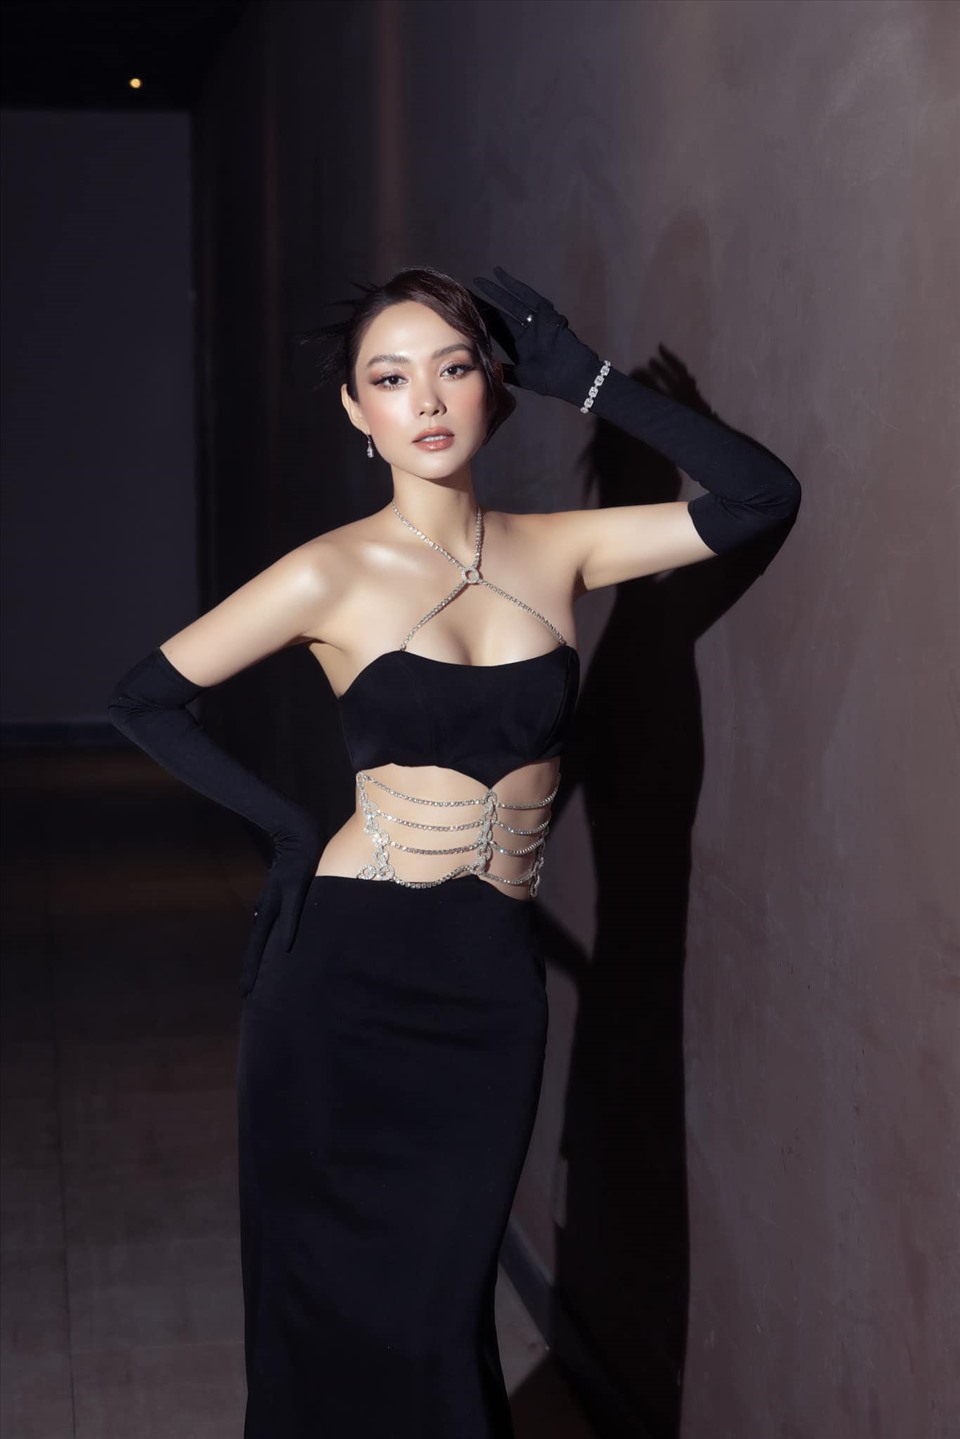 Minh Hằng nhận được nhiều sự ủng hộ khi xác nhận ngồi ghế nóng Miss World Việt Nam 2022. Không chỉ là ca sĩ, cô còn lấn sân và thành công ở lĩnh vực phim ảnh và người mẫu quảng cáo. Cô cũng từng là huấn luyện viên cho cuộc thi tìm kiếm người mẫu. Ảnh: NVCC.